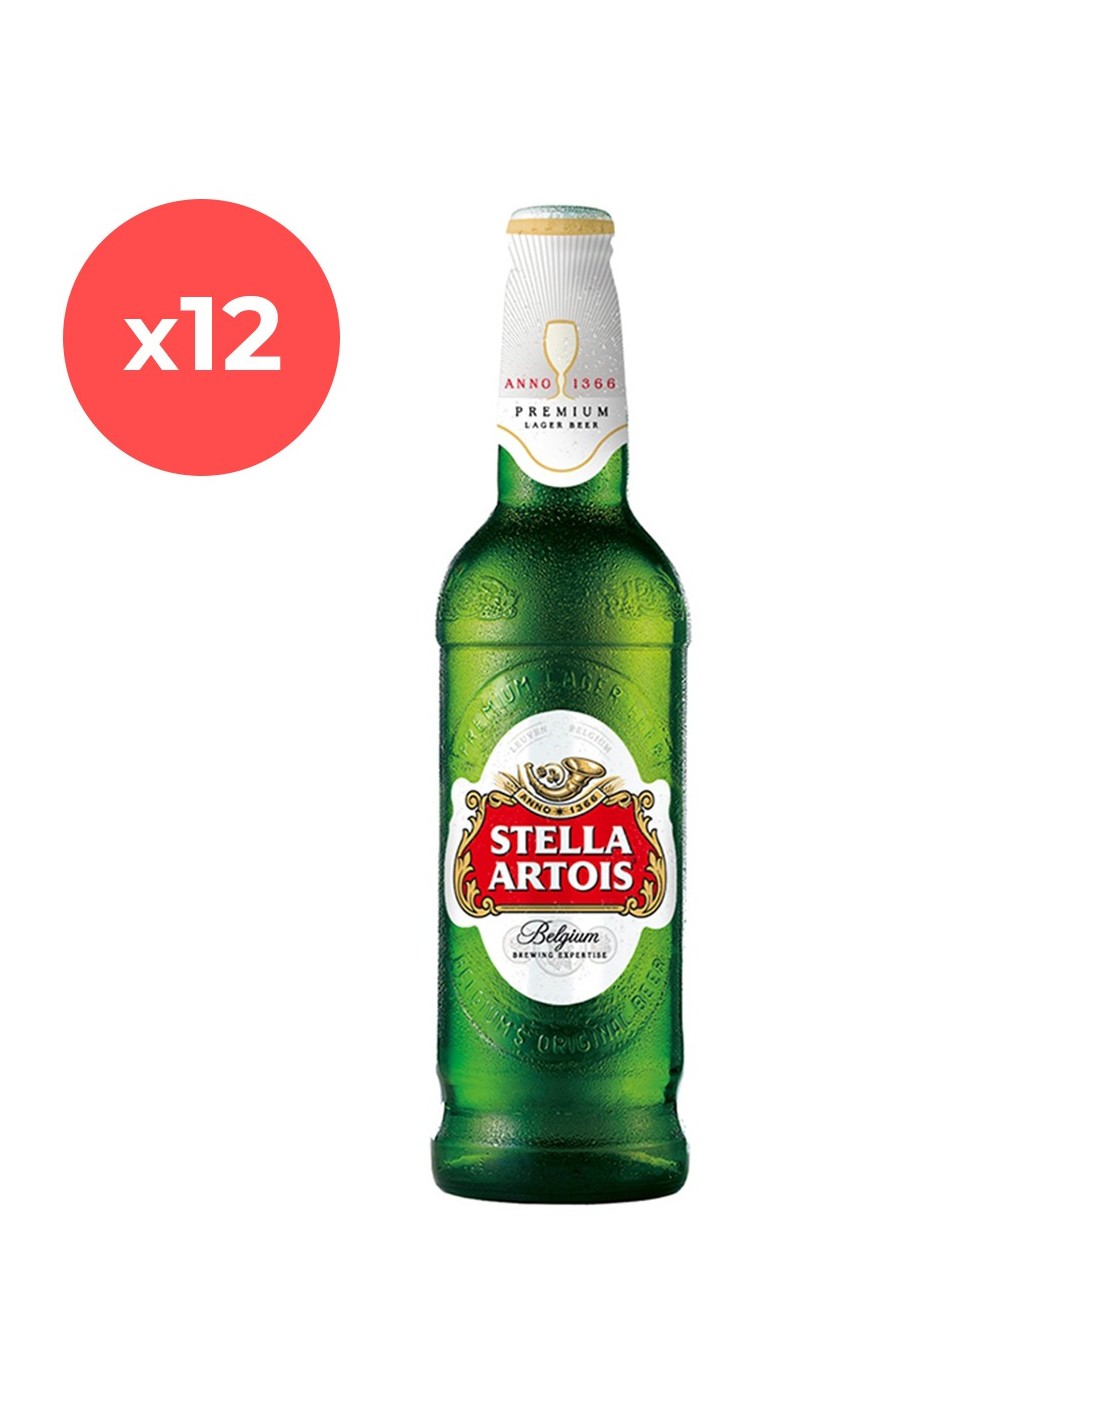 Bax 12 bucati bere blonda Stella Artois, 5% alc., 0.66L, sticla, Belgia